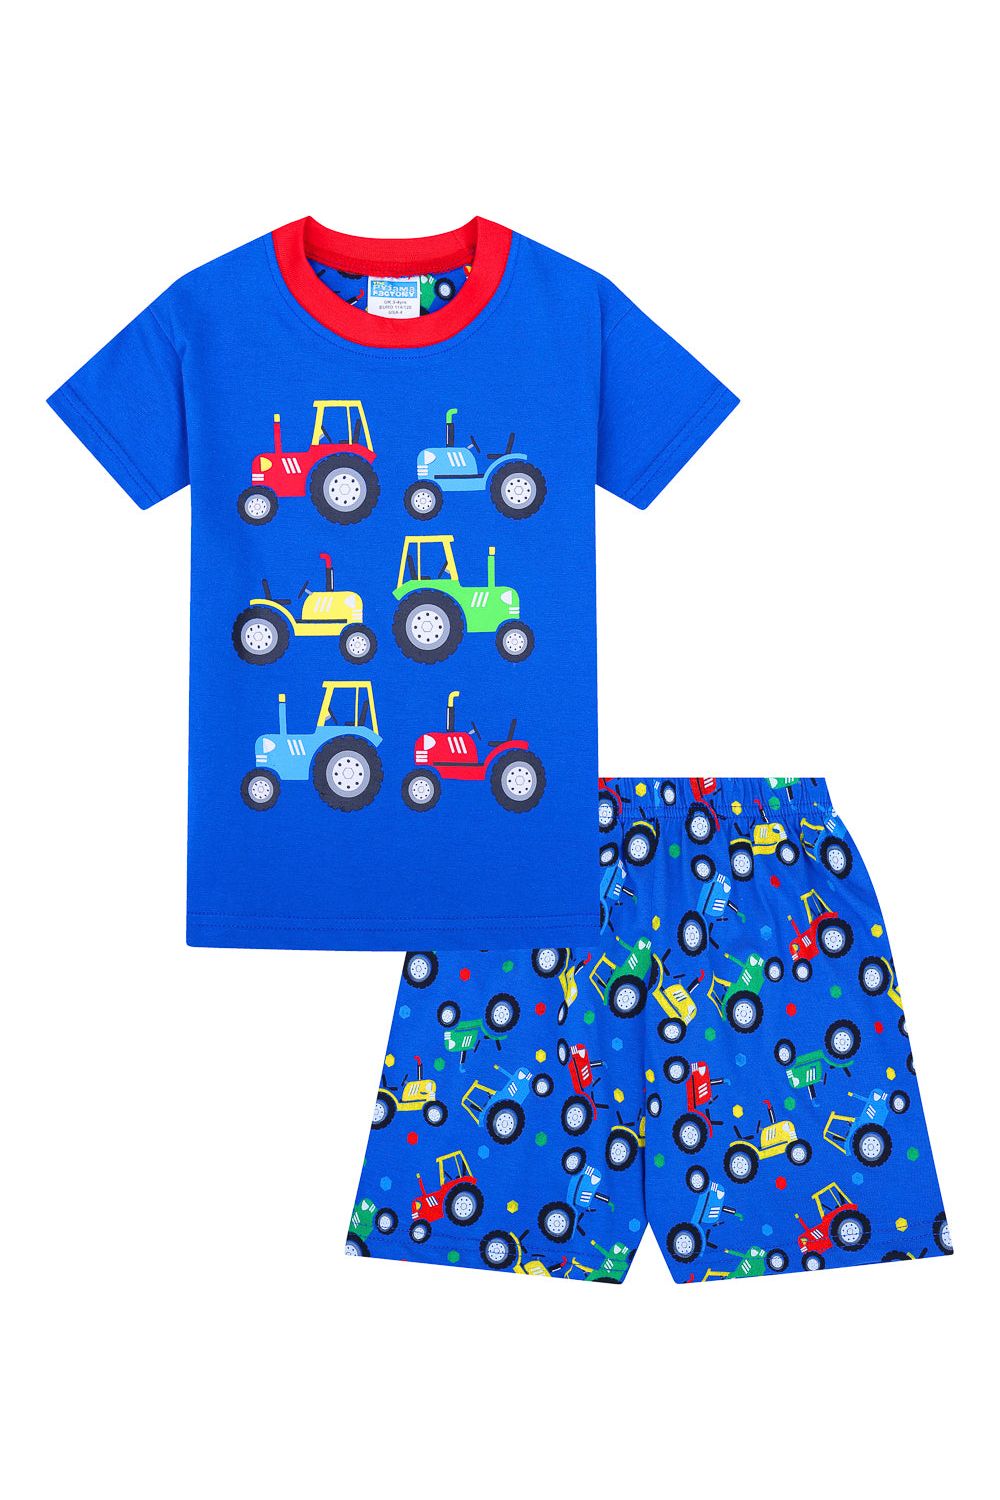 Boys Tractors Short Pyjamas - Pyjamas.com